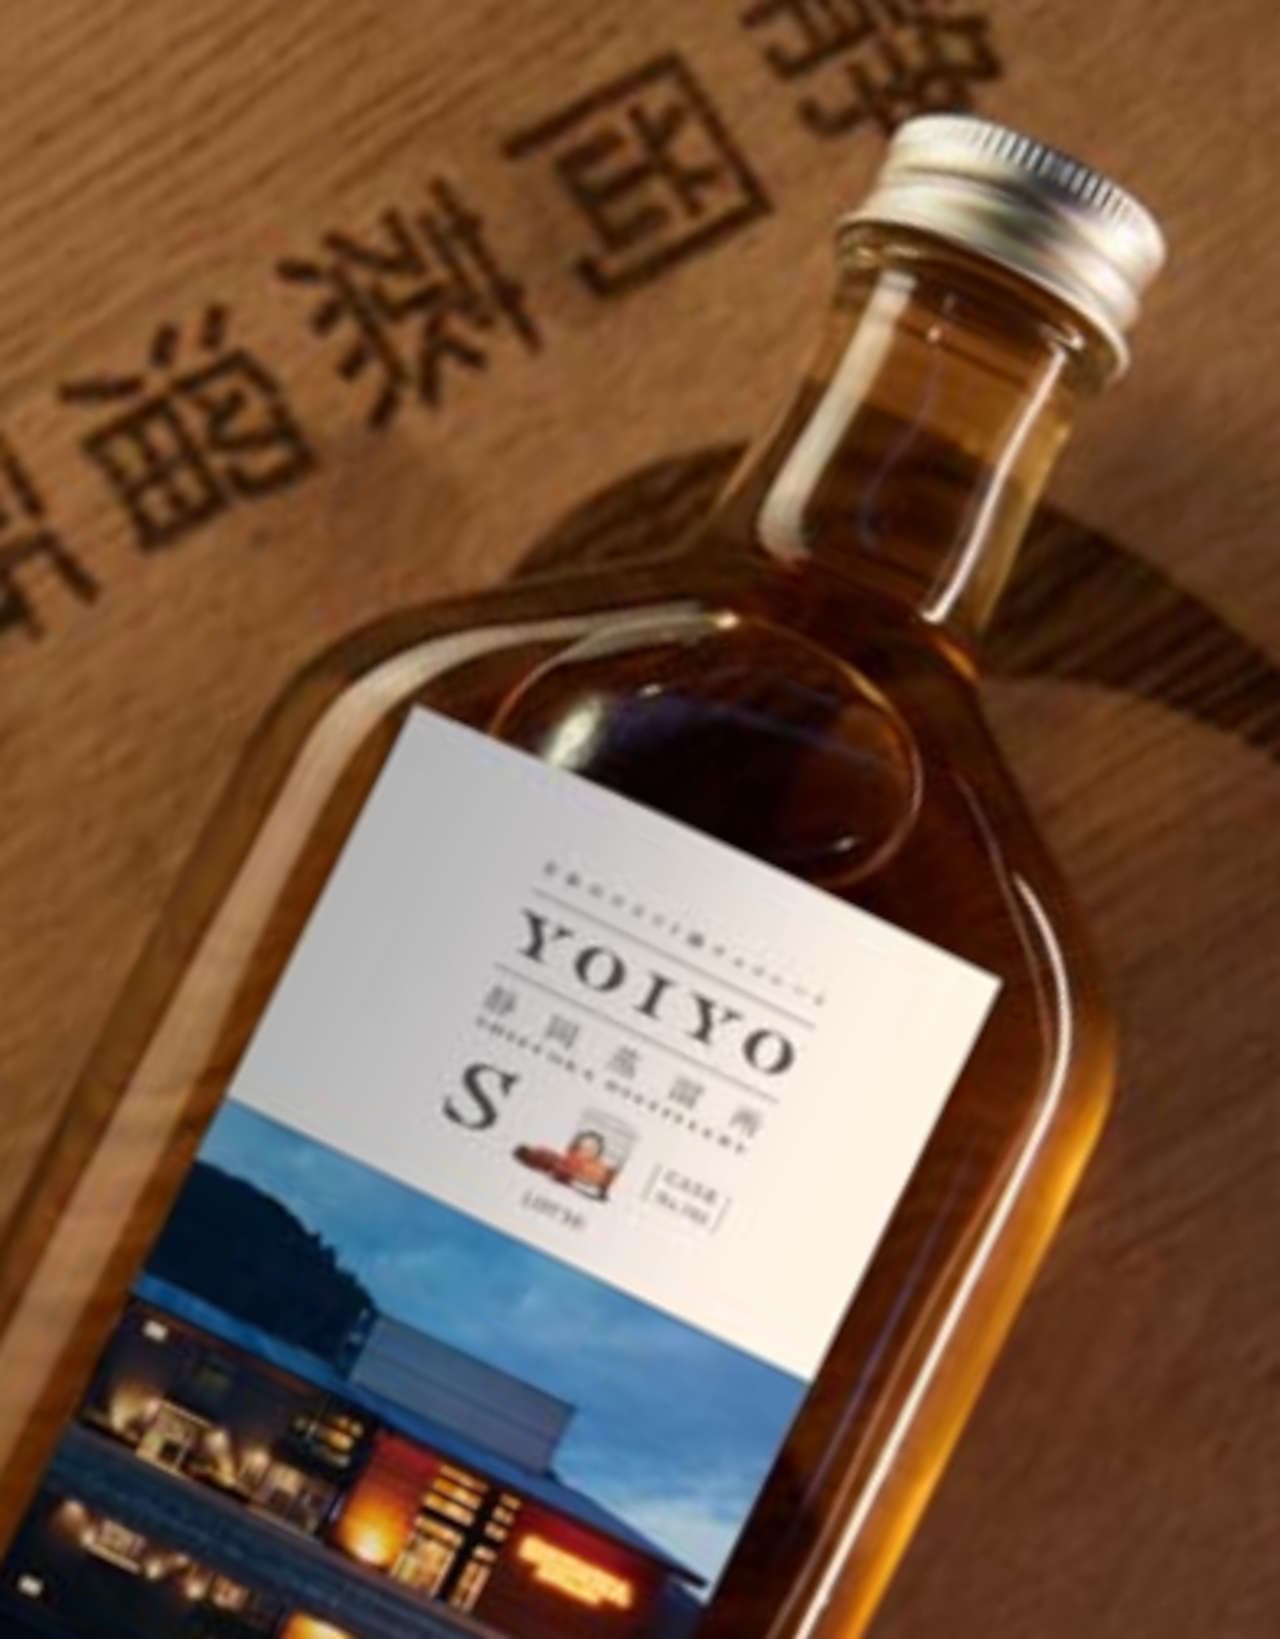 Lotte "YOIYO [Shizuoka Distillery] 782